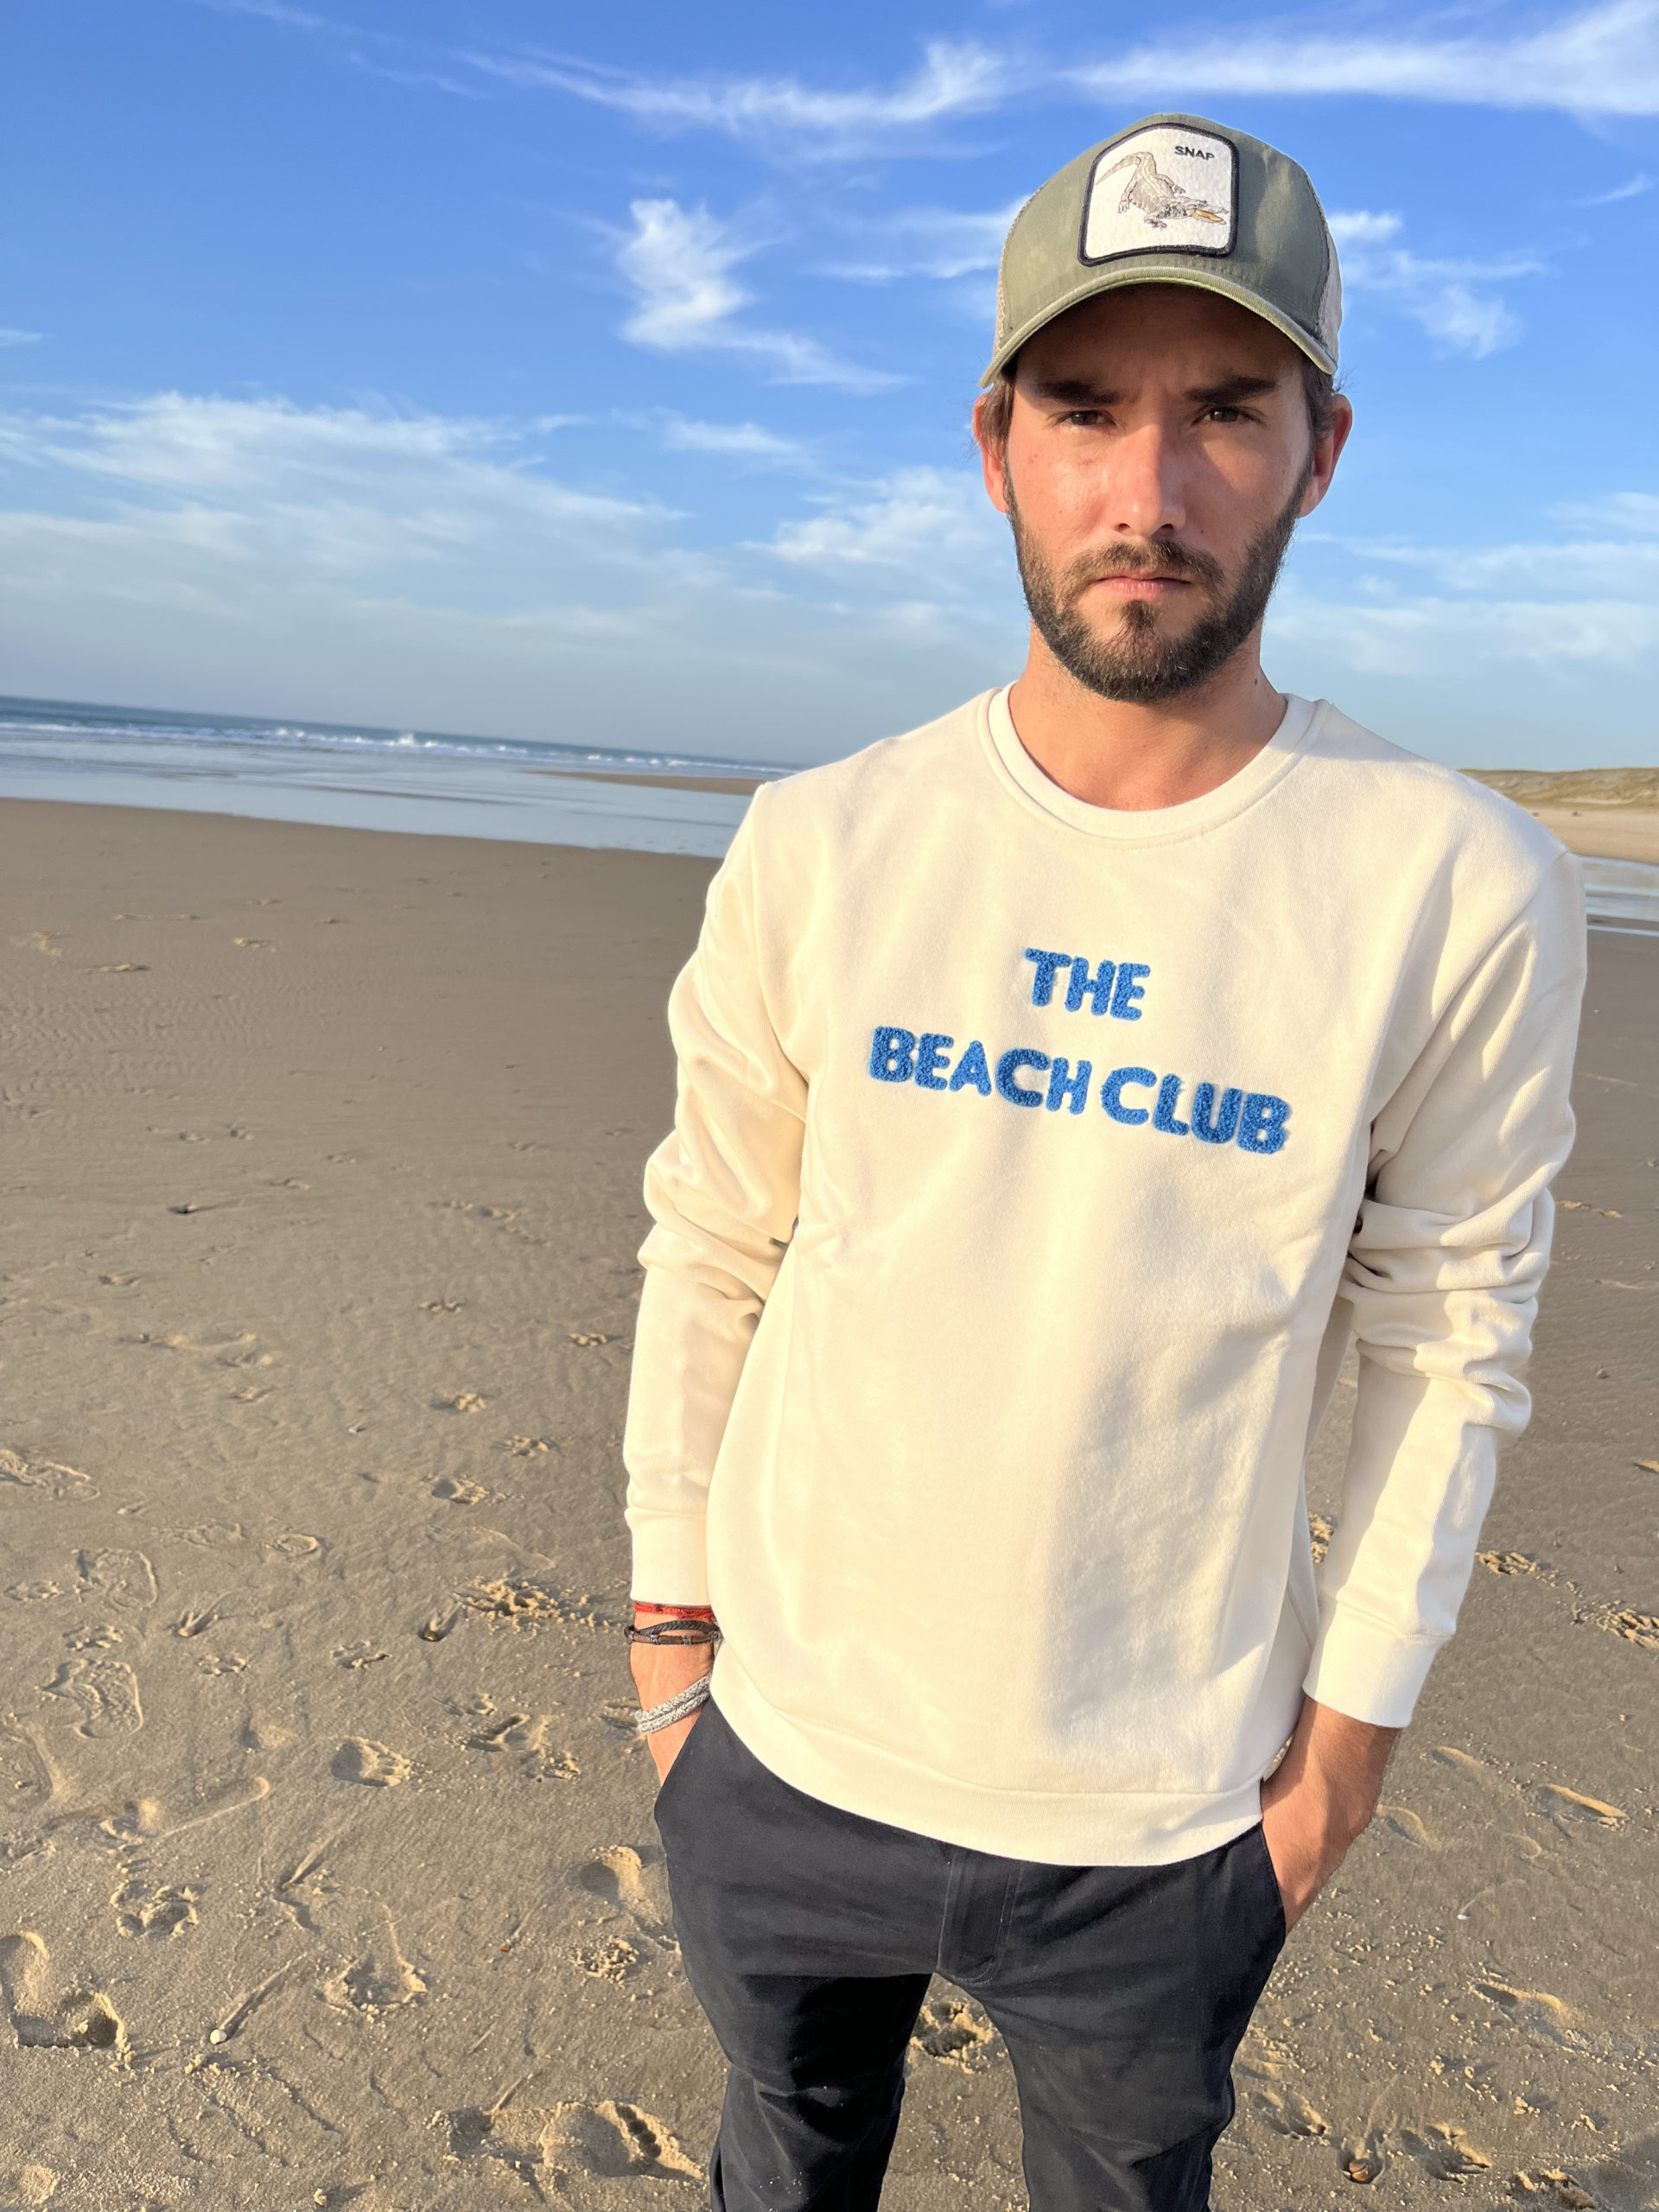 Un sweat pour homme, estampillé "The beach club" de la marque régionale 33.